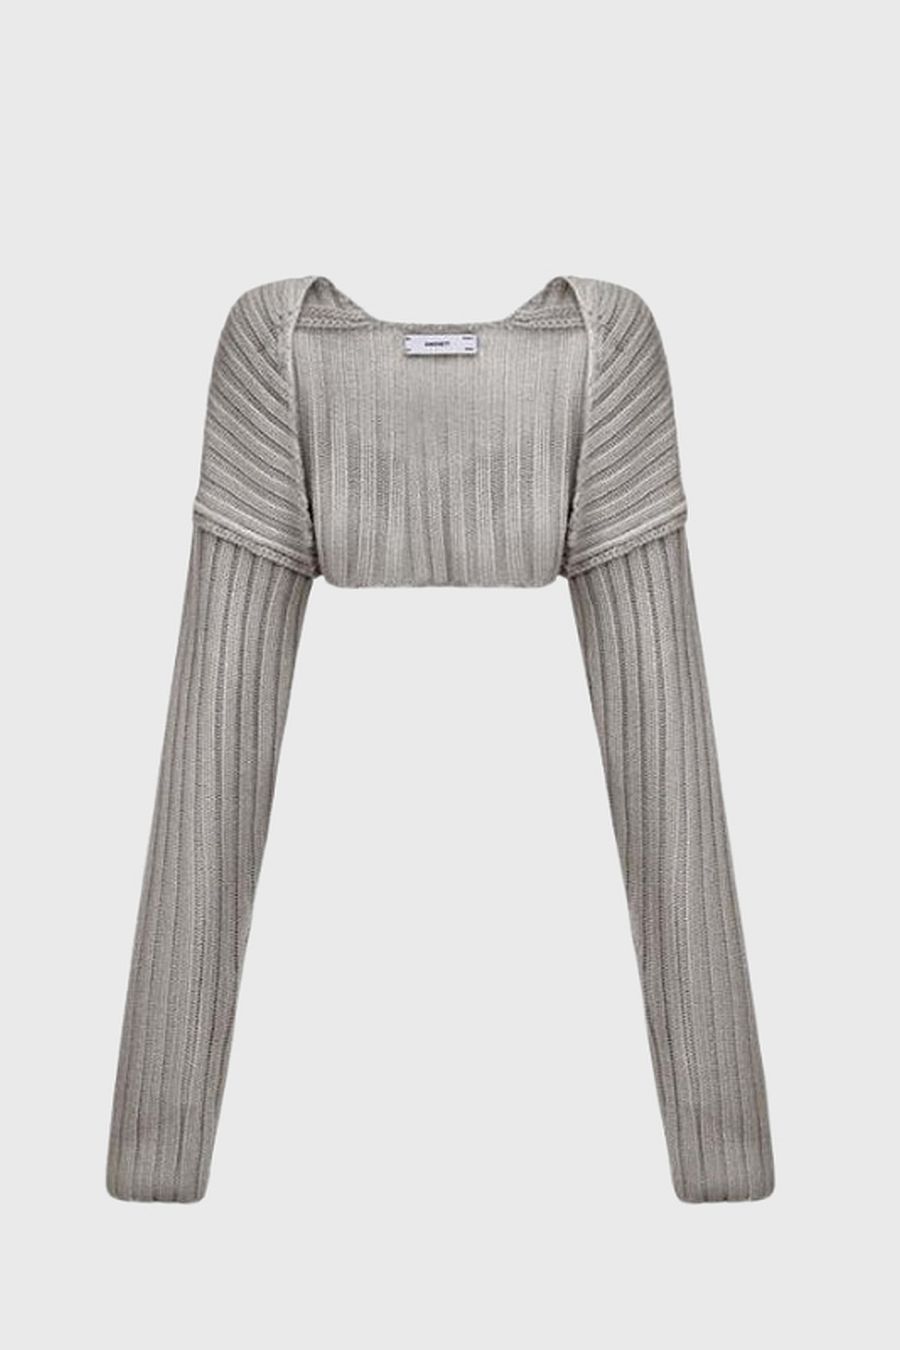 SIMONETT Sweater Sleeve - Beige | The Lobby | The Lobby